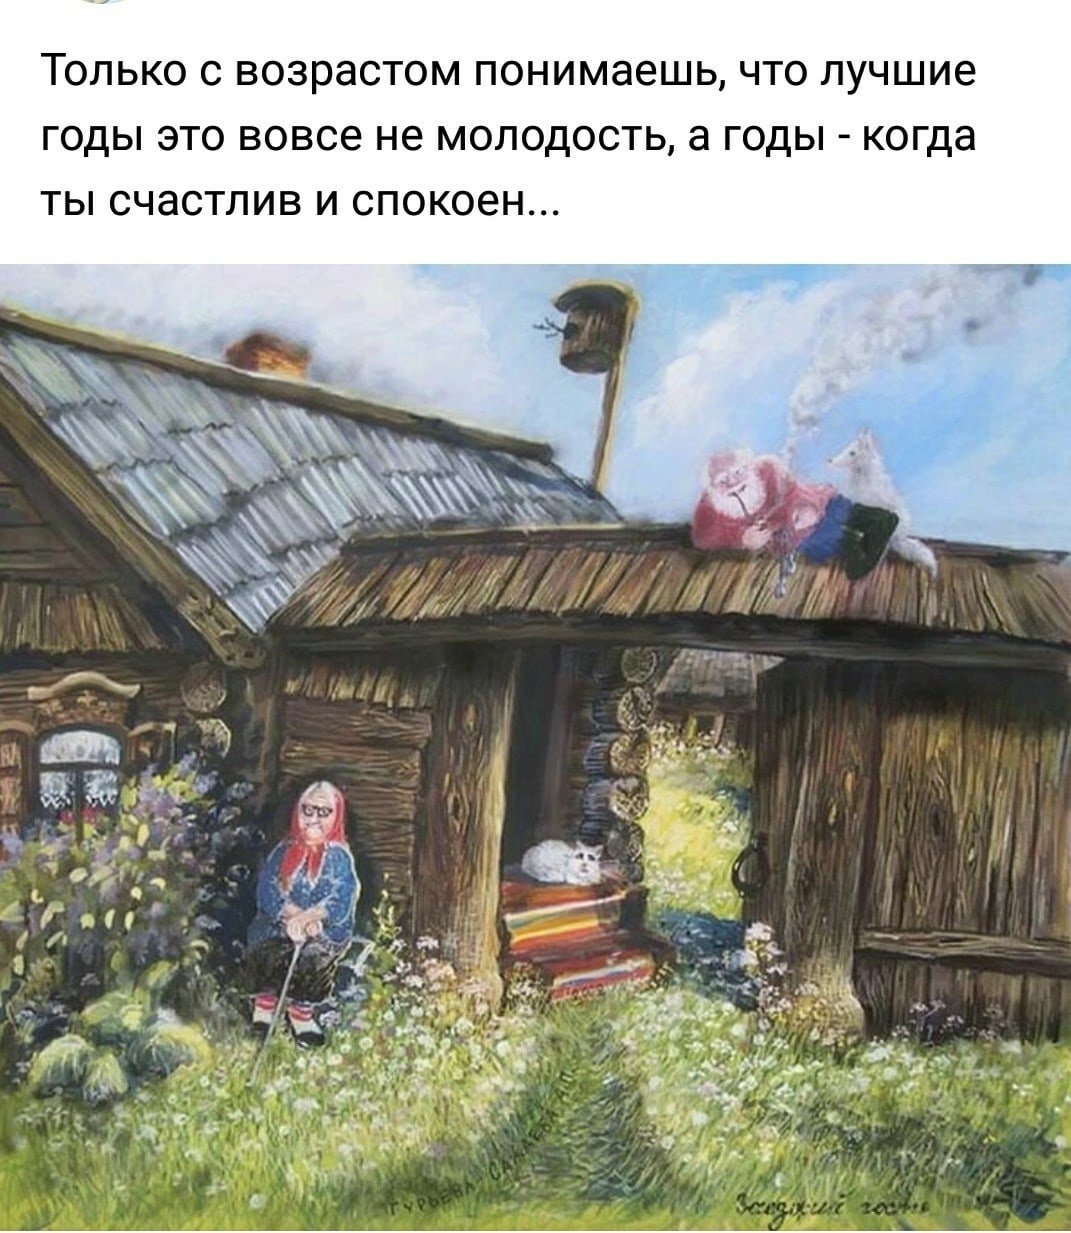 Изменения в деревенской жизни. Художник а. Гурьева-Сажаева.